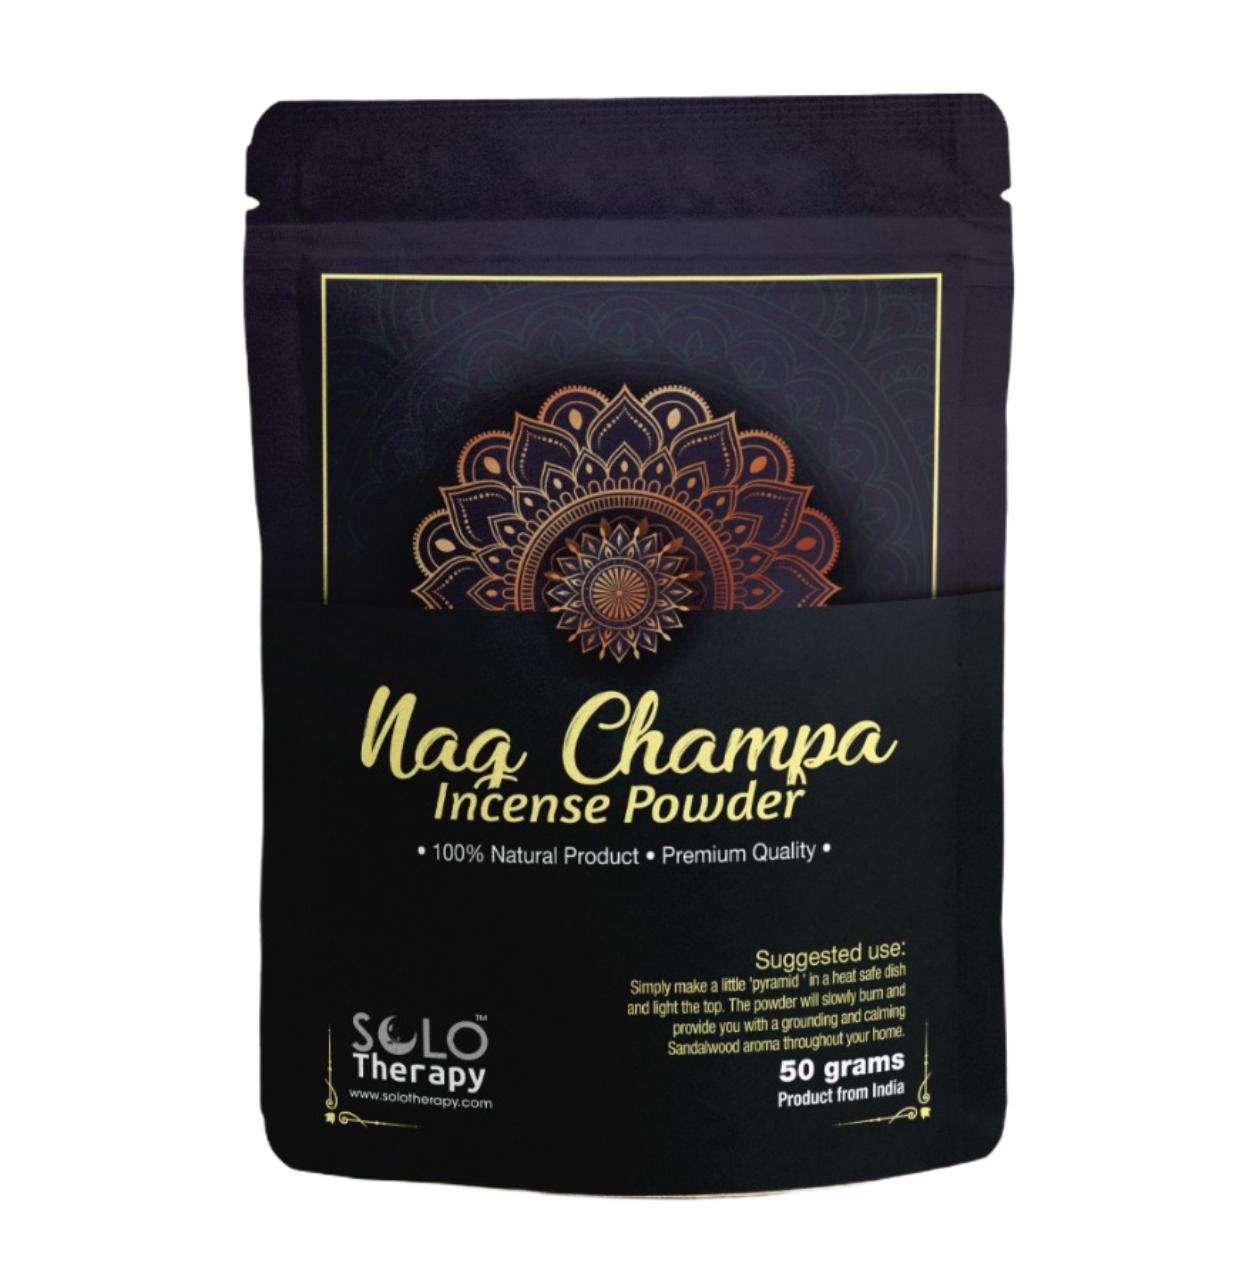 Nag Champa Incense Powder - 50 Grams - Product From India